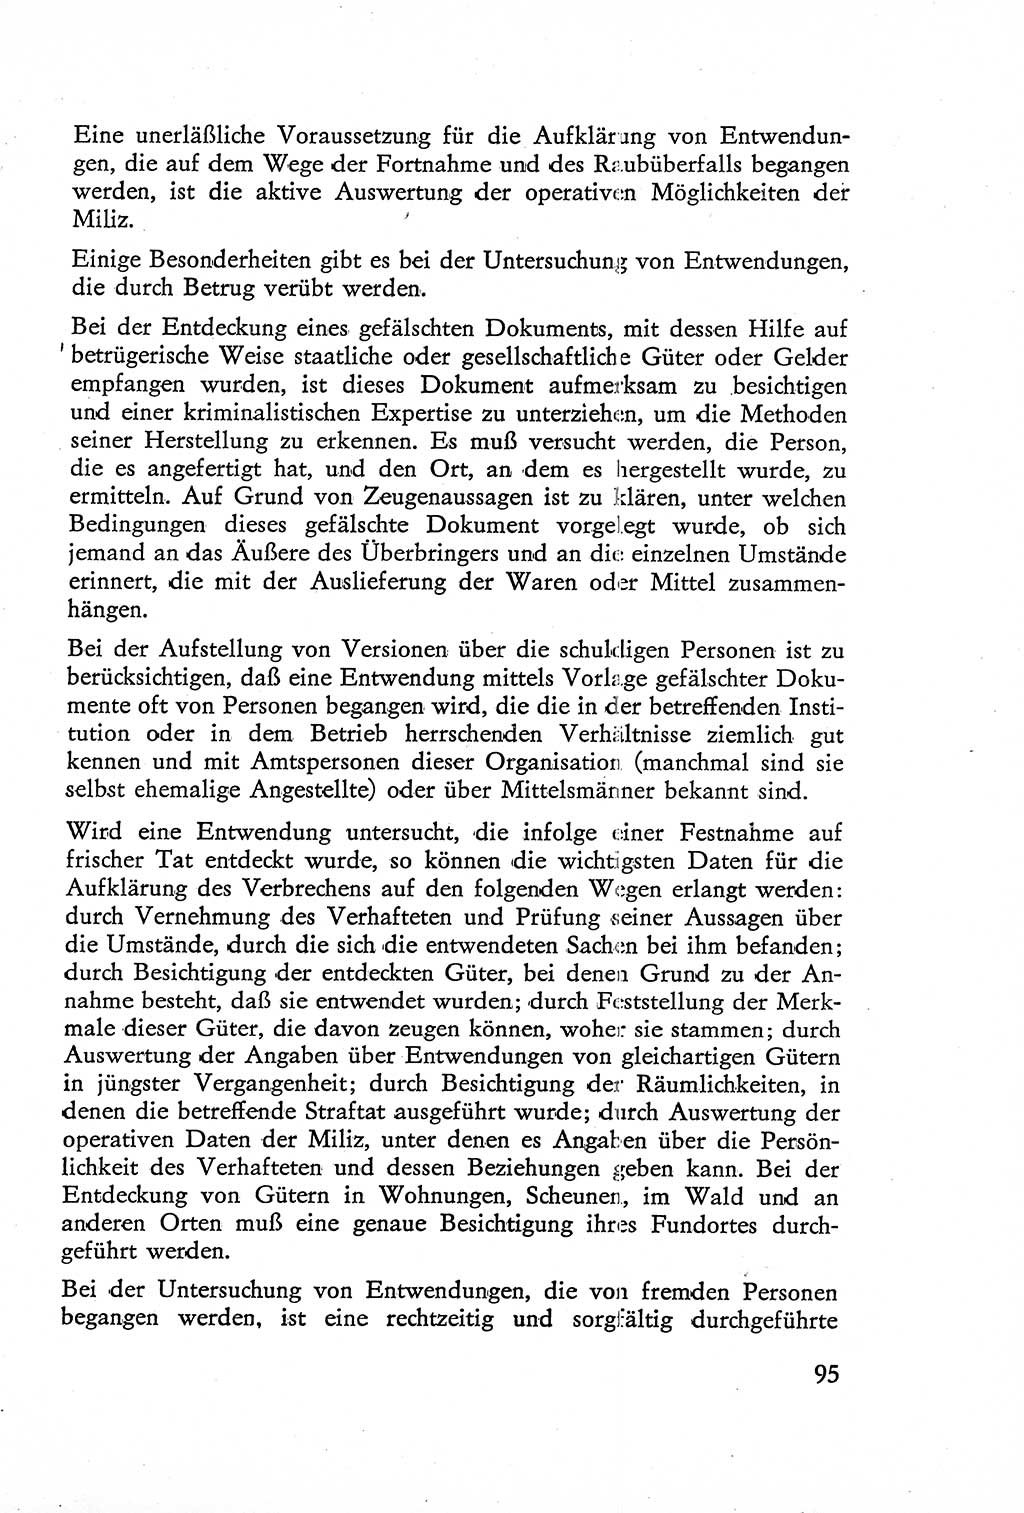 Die Untersuchung einzelner Verbrechensarten [Deutsche Demokratische Republik (DDR)] 1960, Seite 95 (Unters. Verbr.-Art. DDR 1960, S. 95)